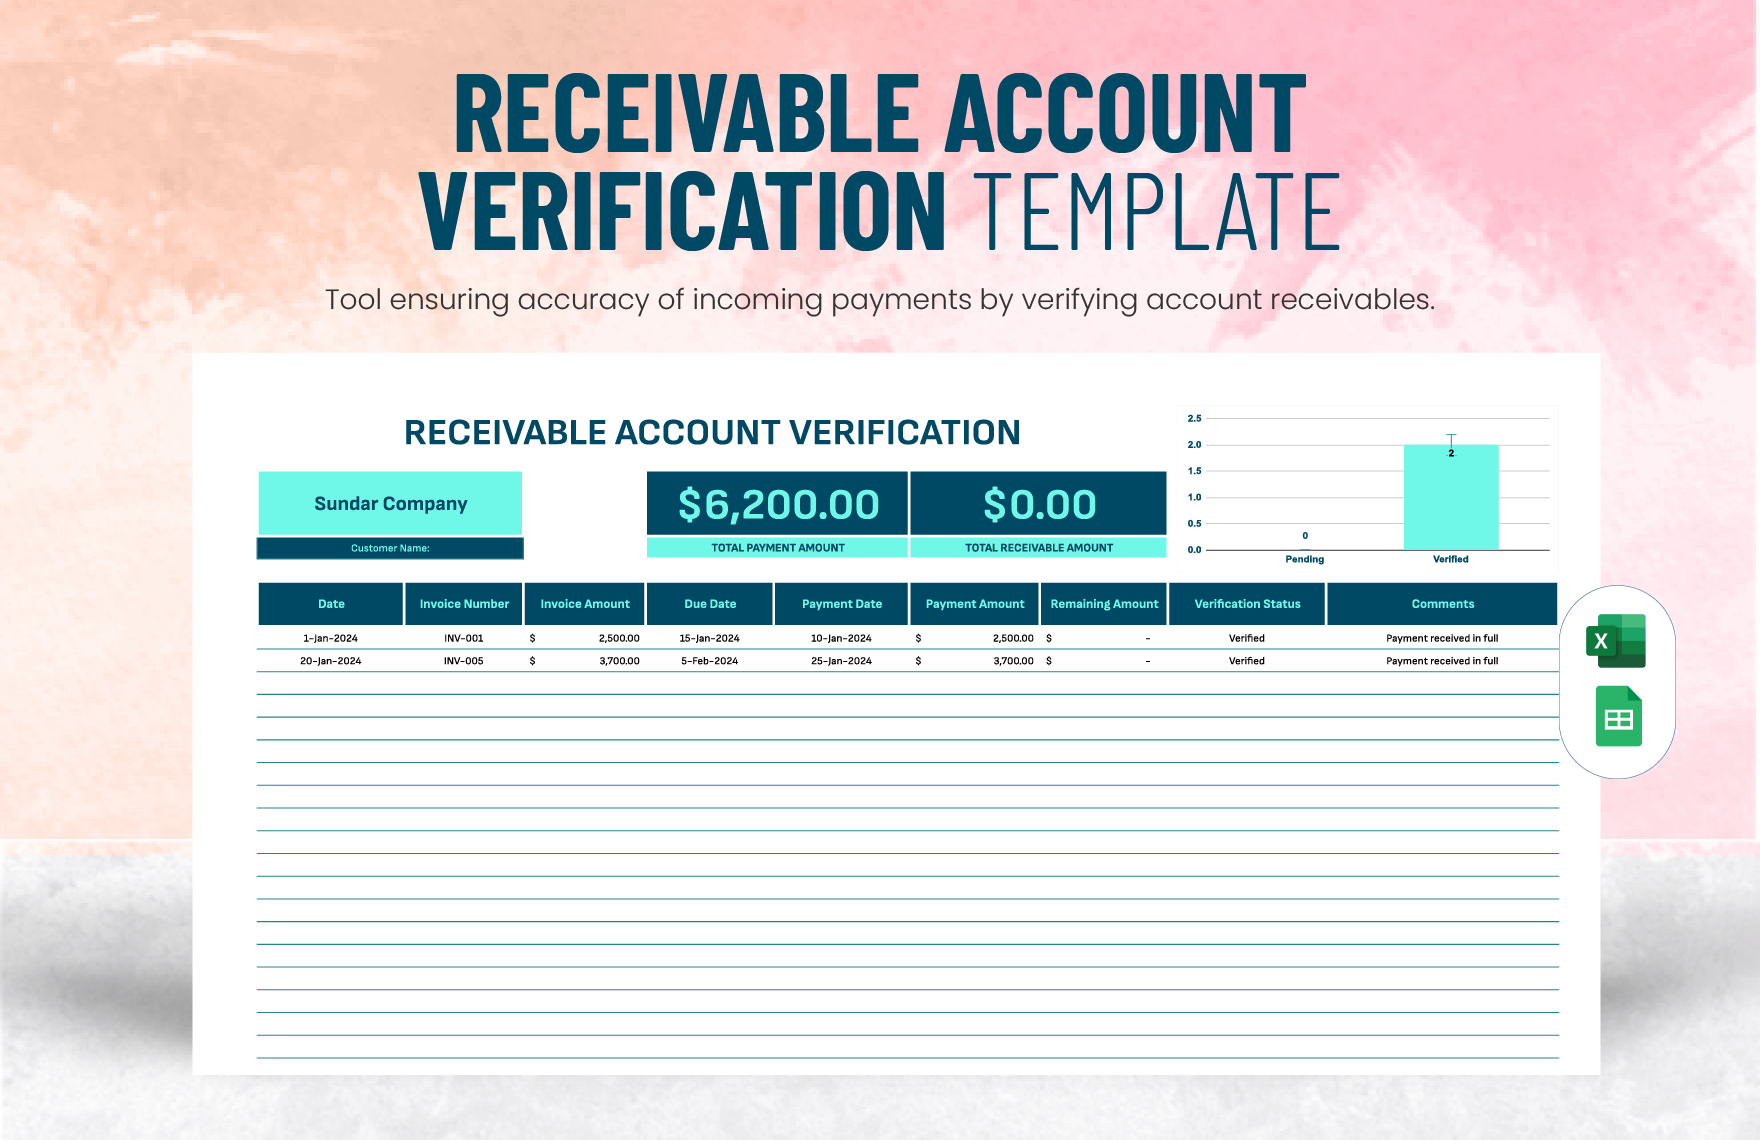 Receivable Account Verification Template